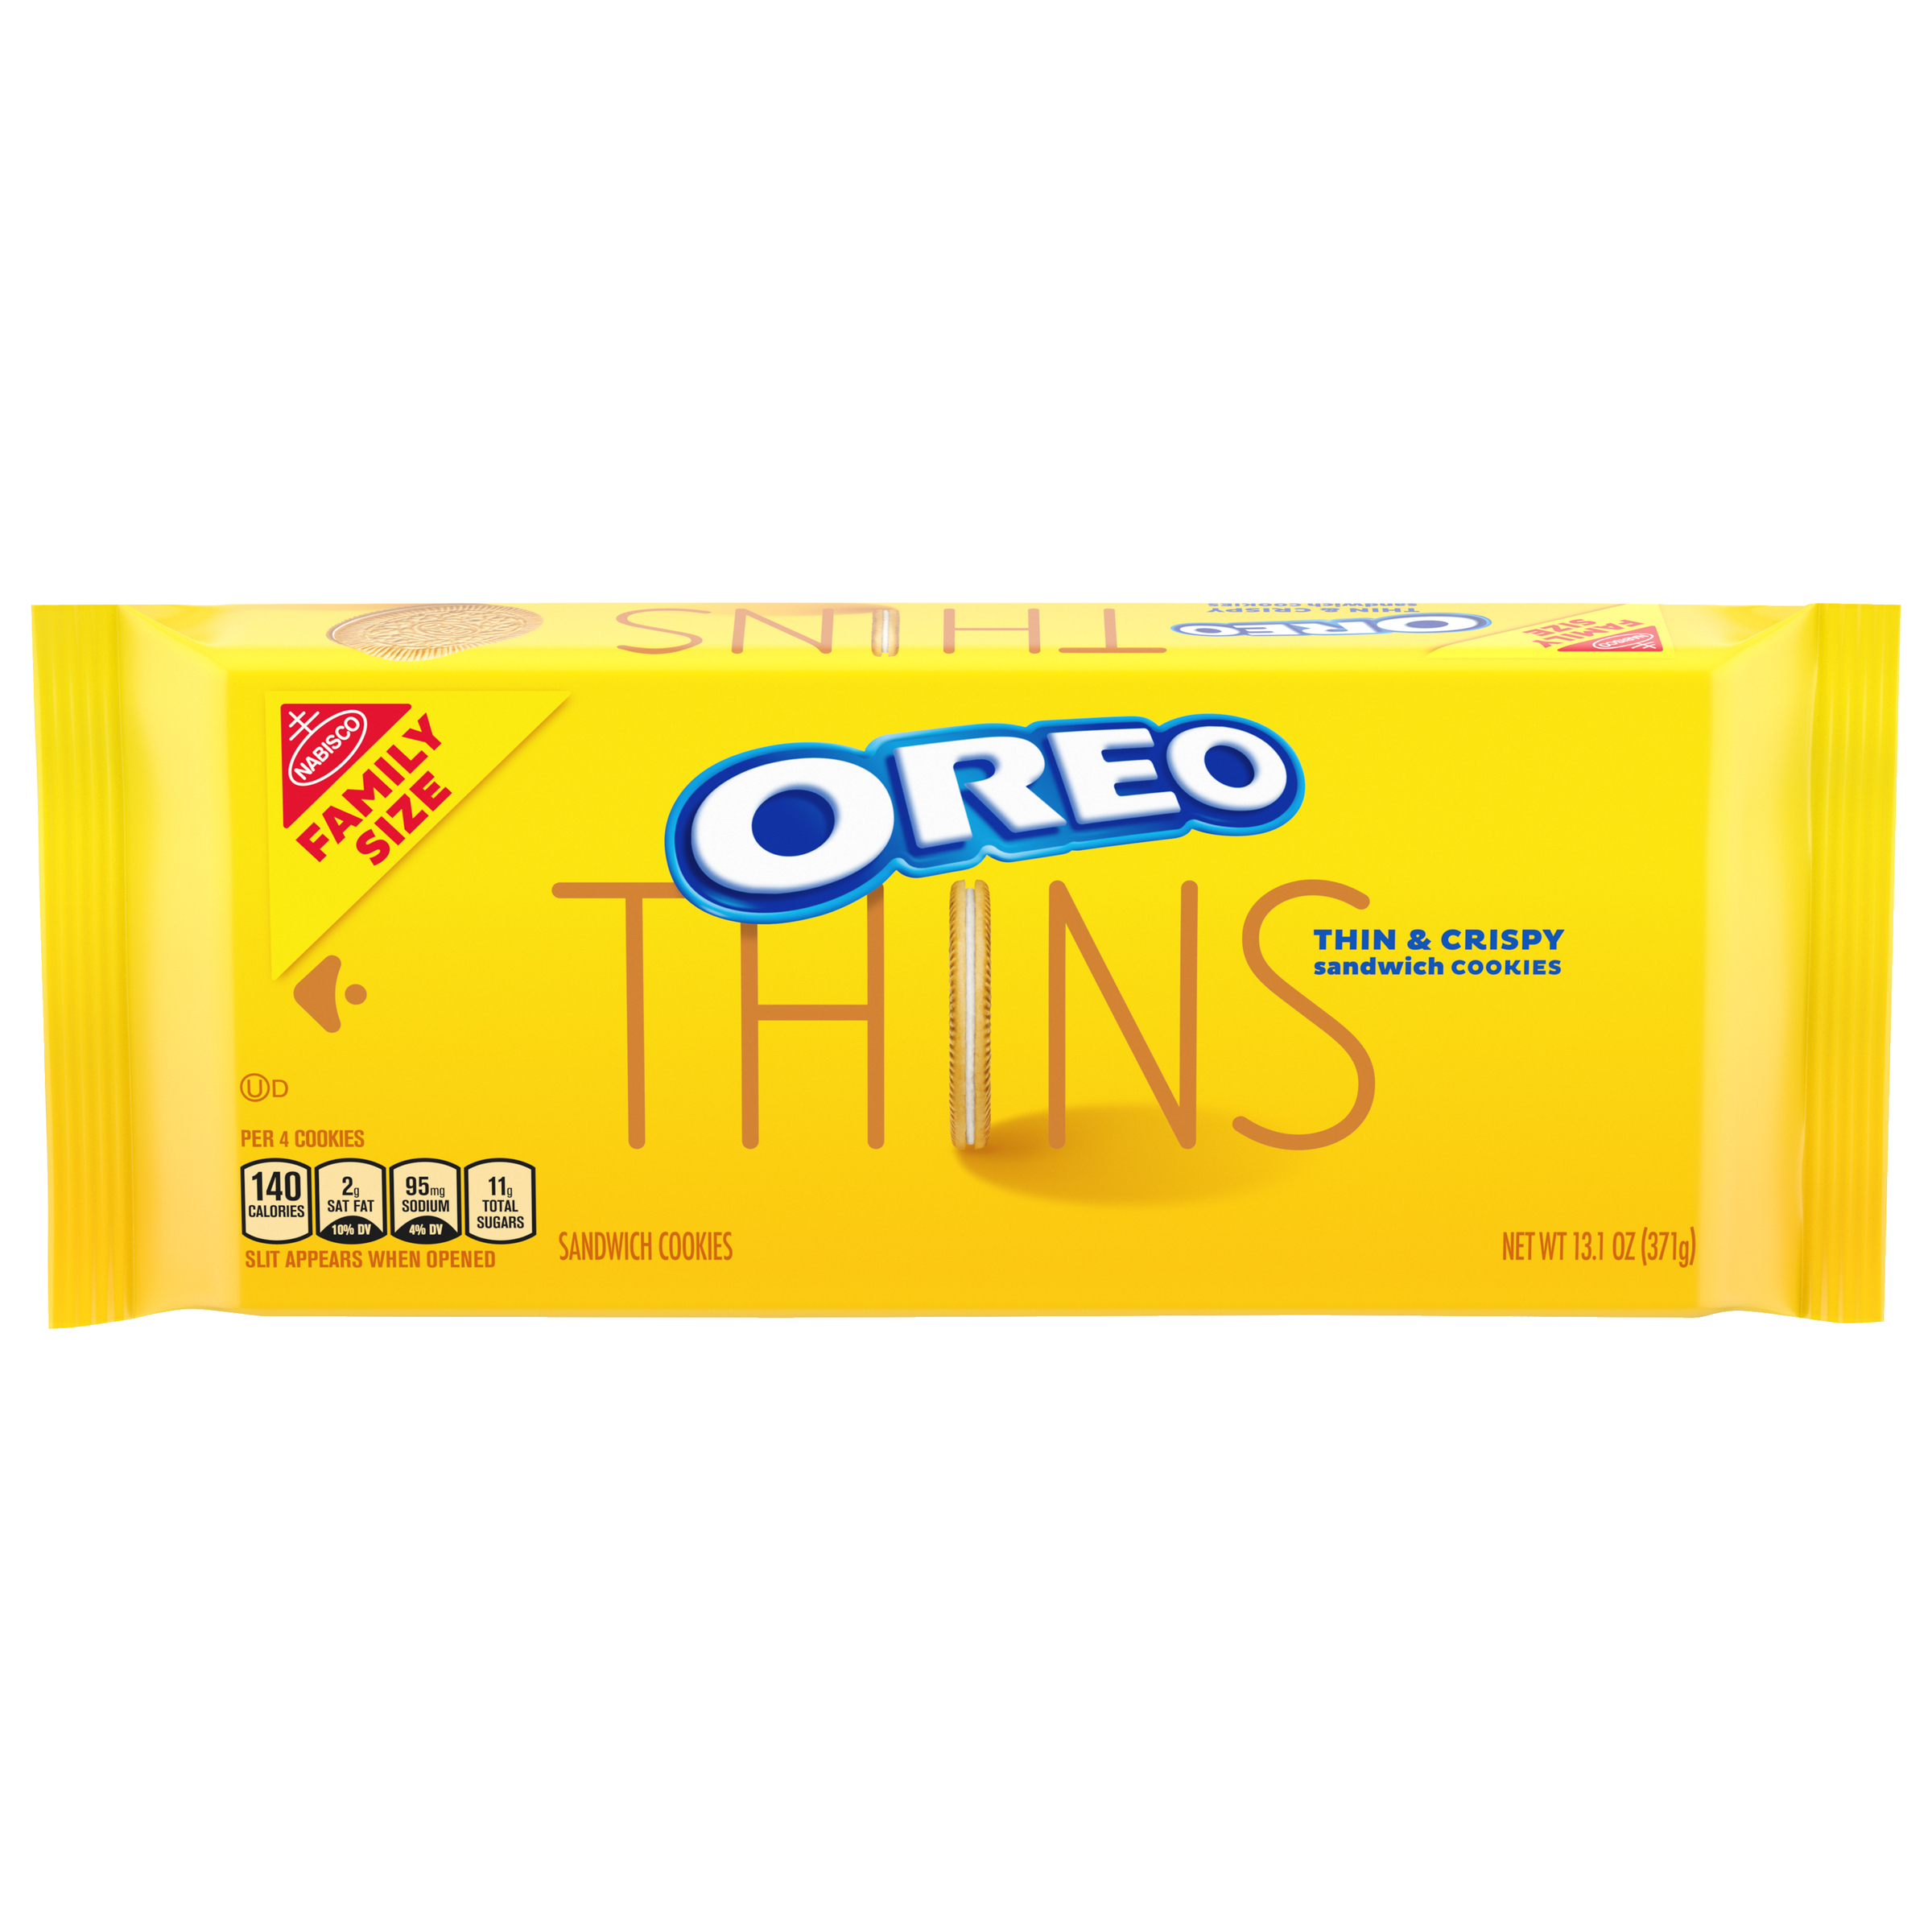 OREO Thins Golden Oreo Cookies 13.1 oz